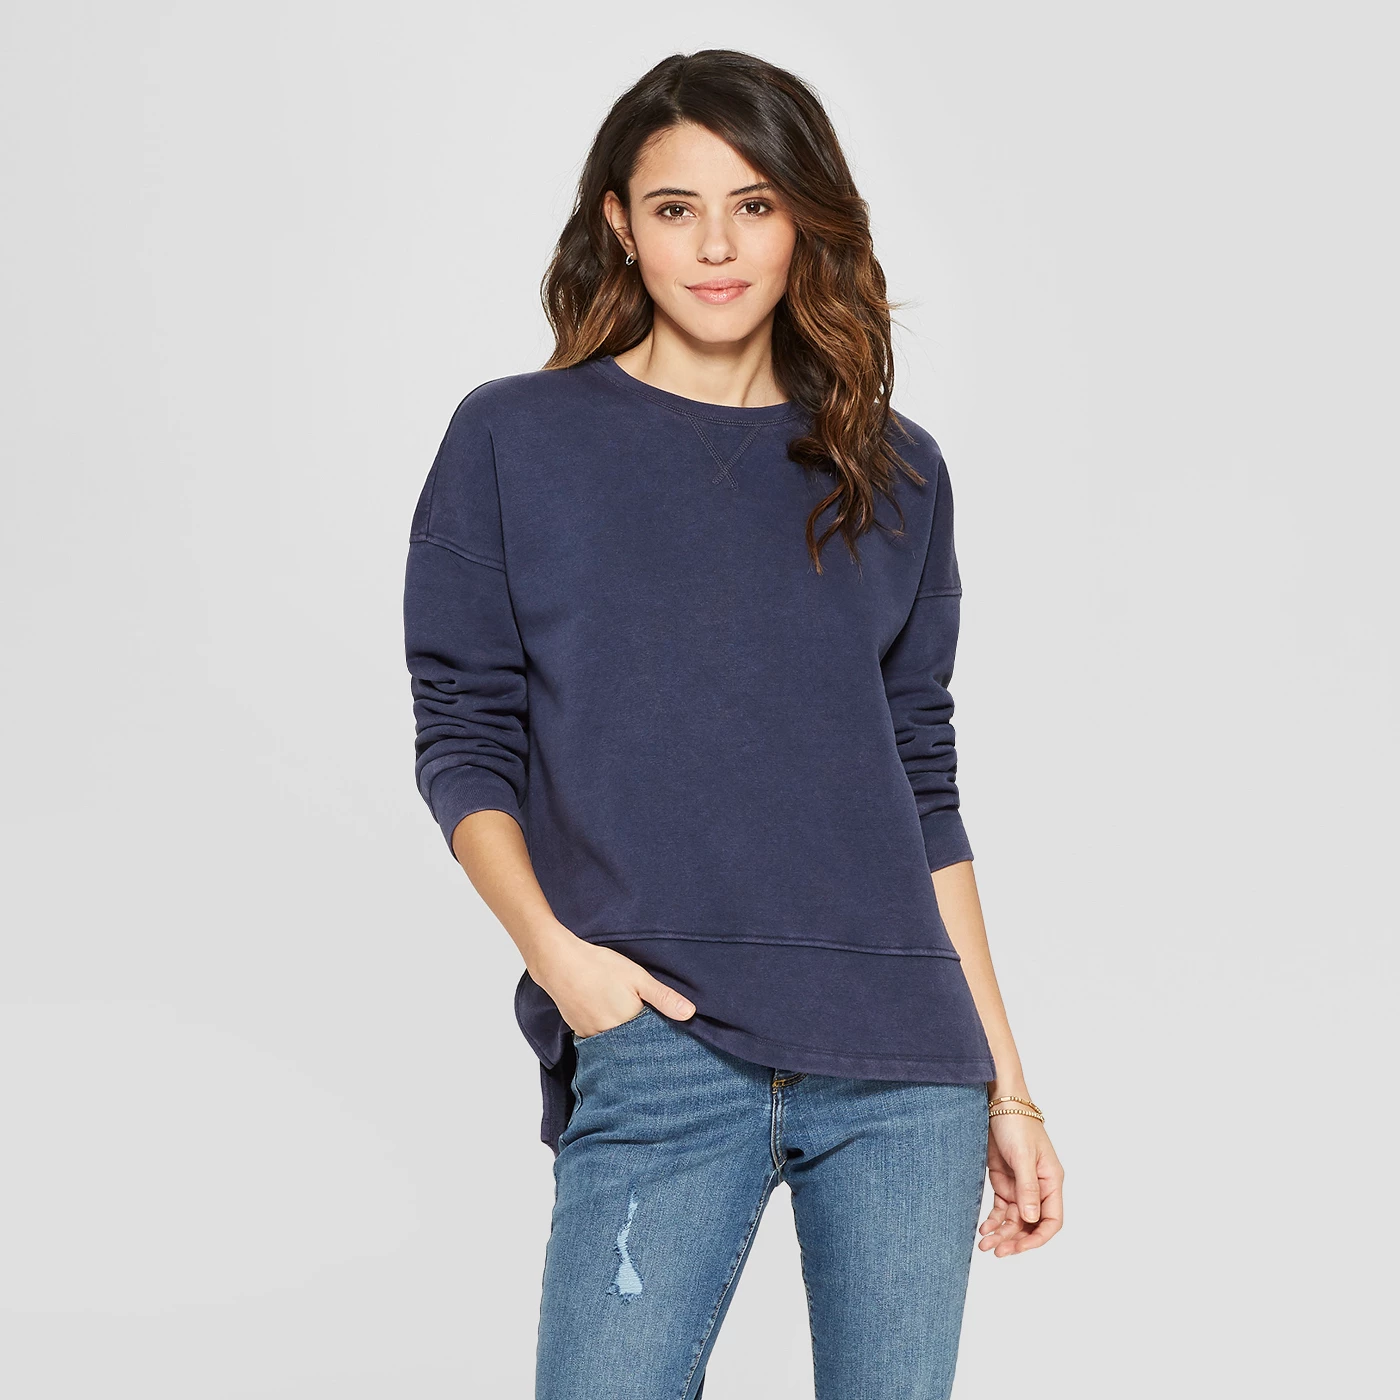 Women's Long Sleeve Tunic Sweatshirt - Universal Thread™ - image 1 of 3